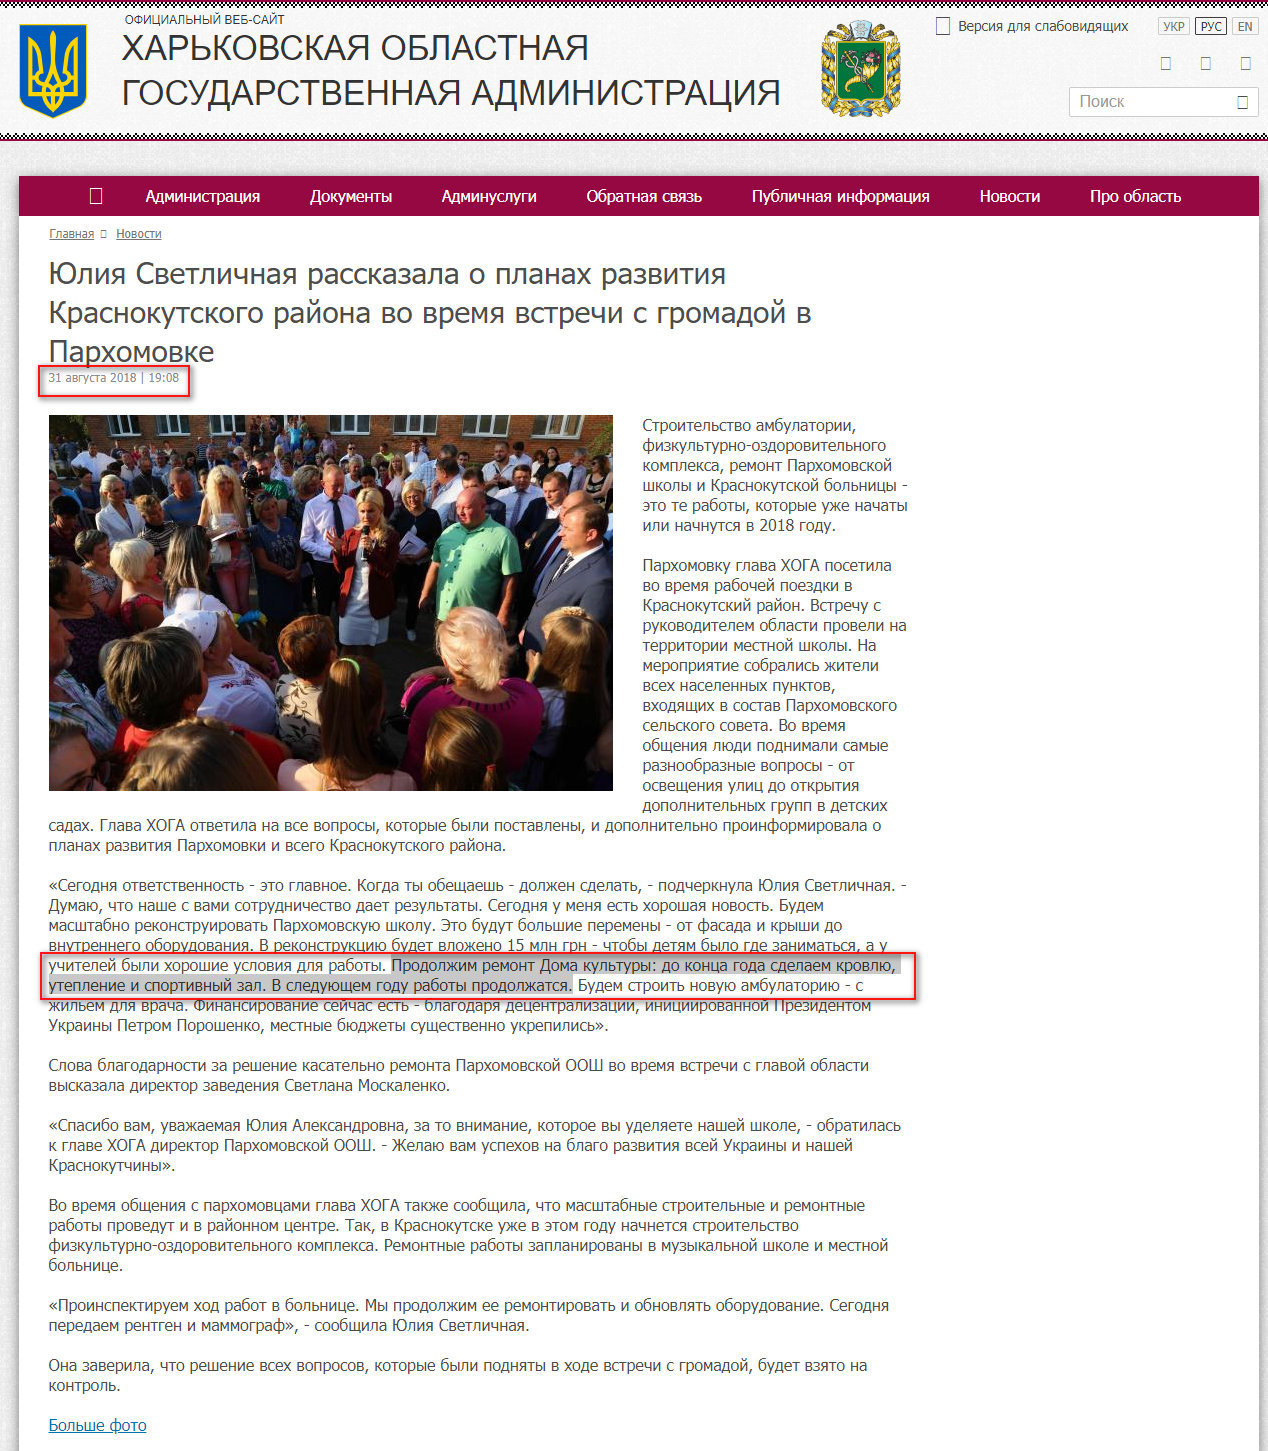 http://kharkivoda.gov.ua/ru/news/94589